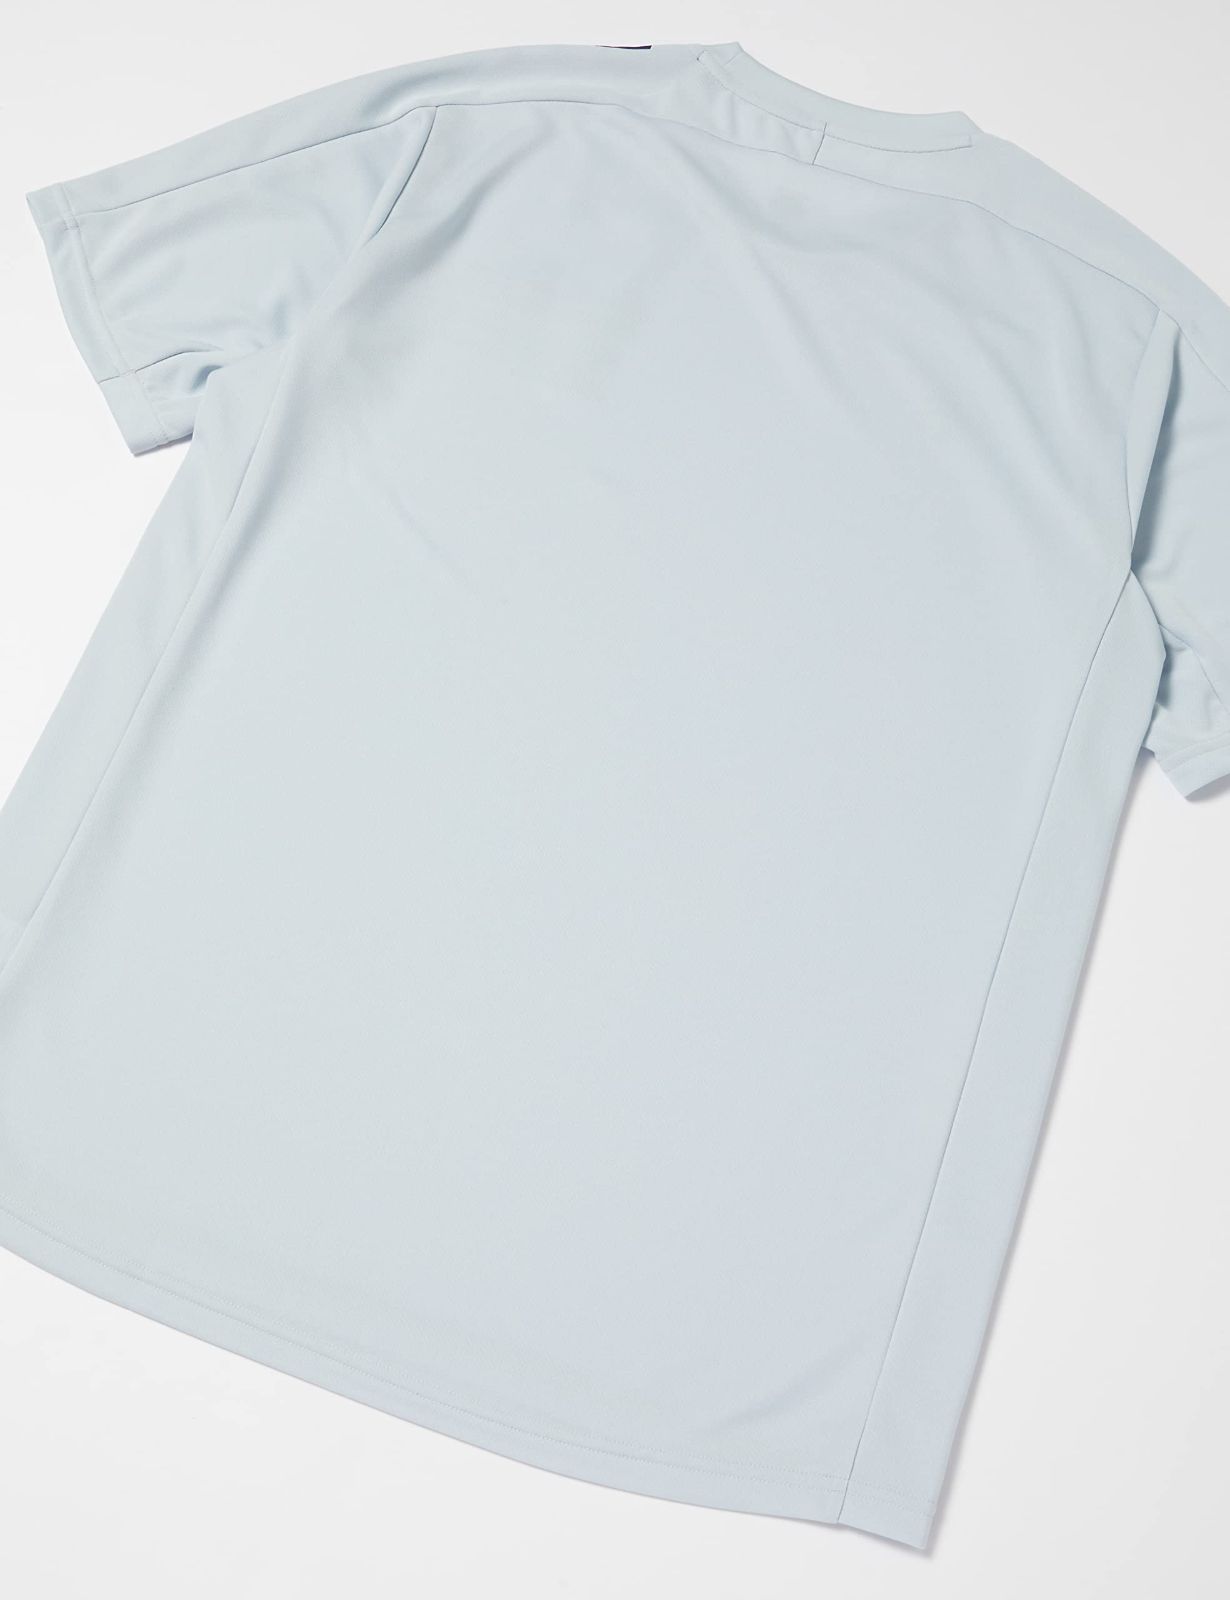 最低価格の デサント Tシャツ バレーボール 半袖 吸汗速乾 ドライ